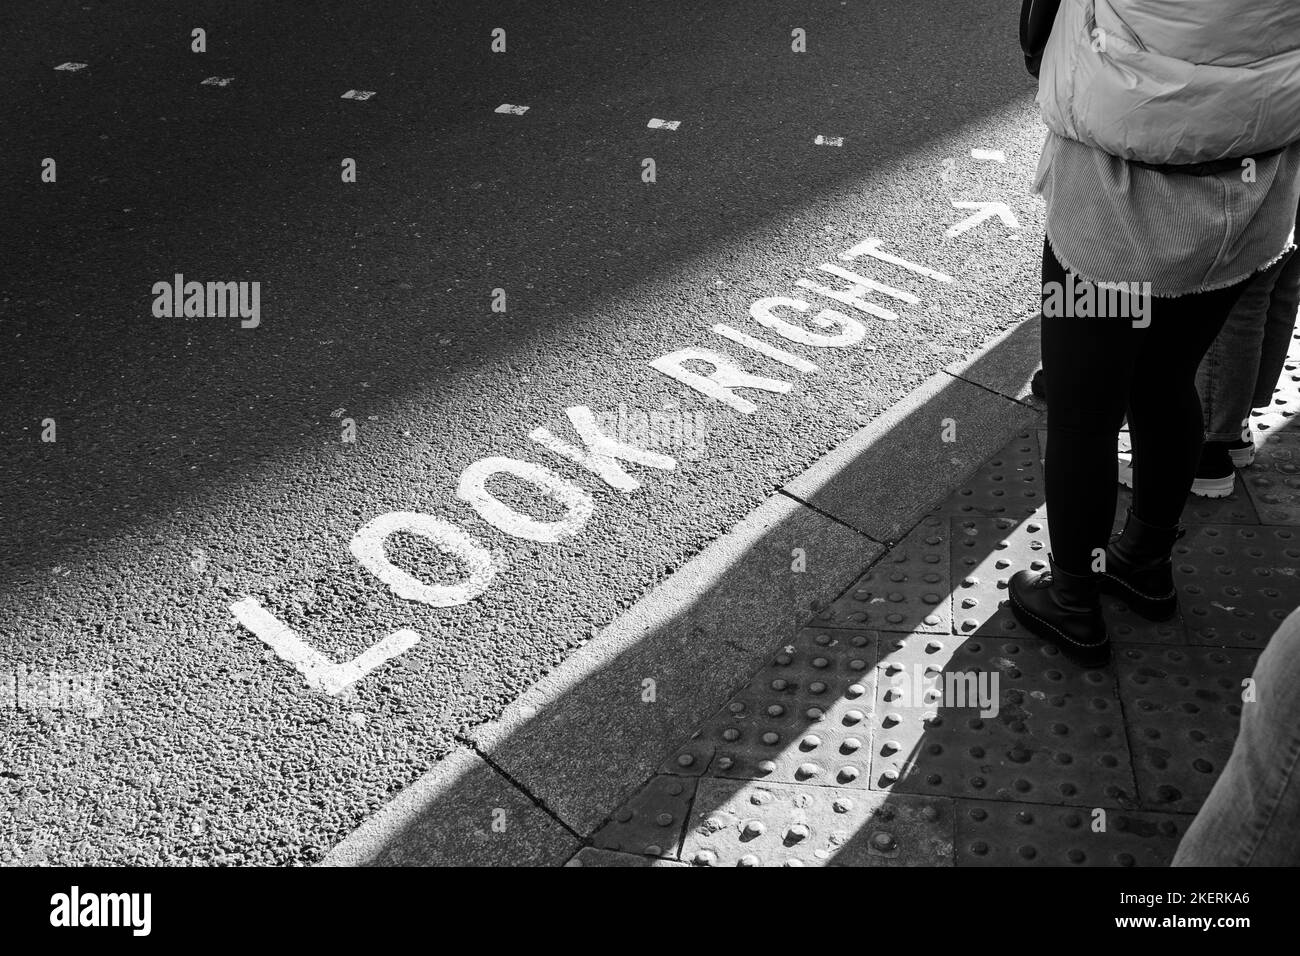 Marquage routier emblématique peint « look right » pour les piétons de Londres. Concept: Traverser la route, sécurité routière, piétons qui attendent, visiter Londres Banque D'Images